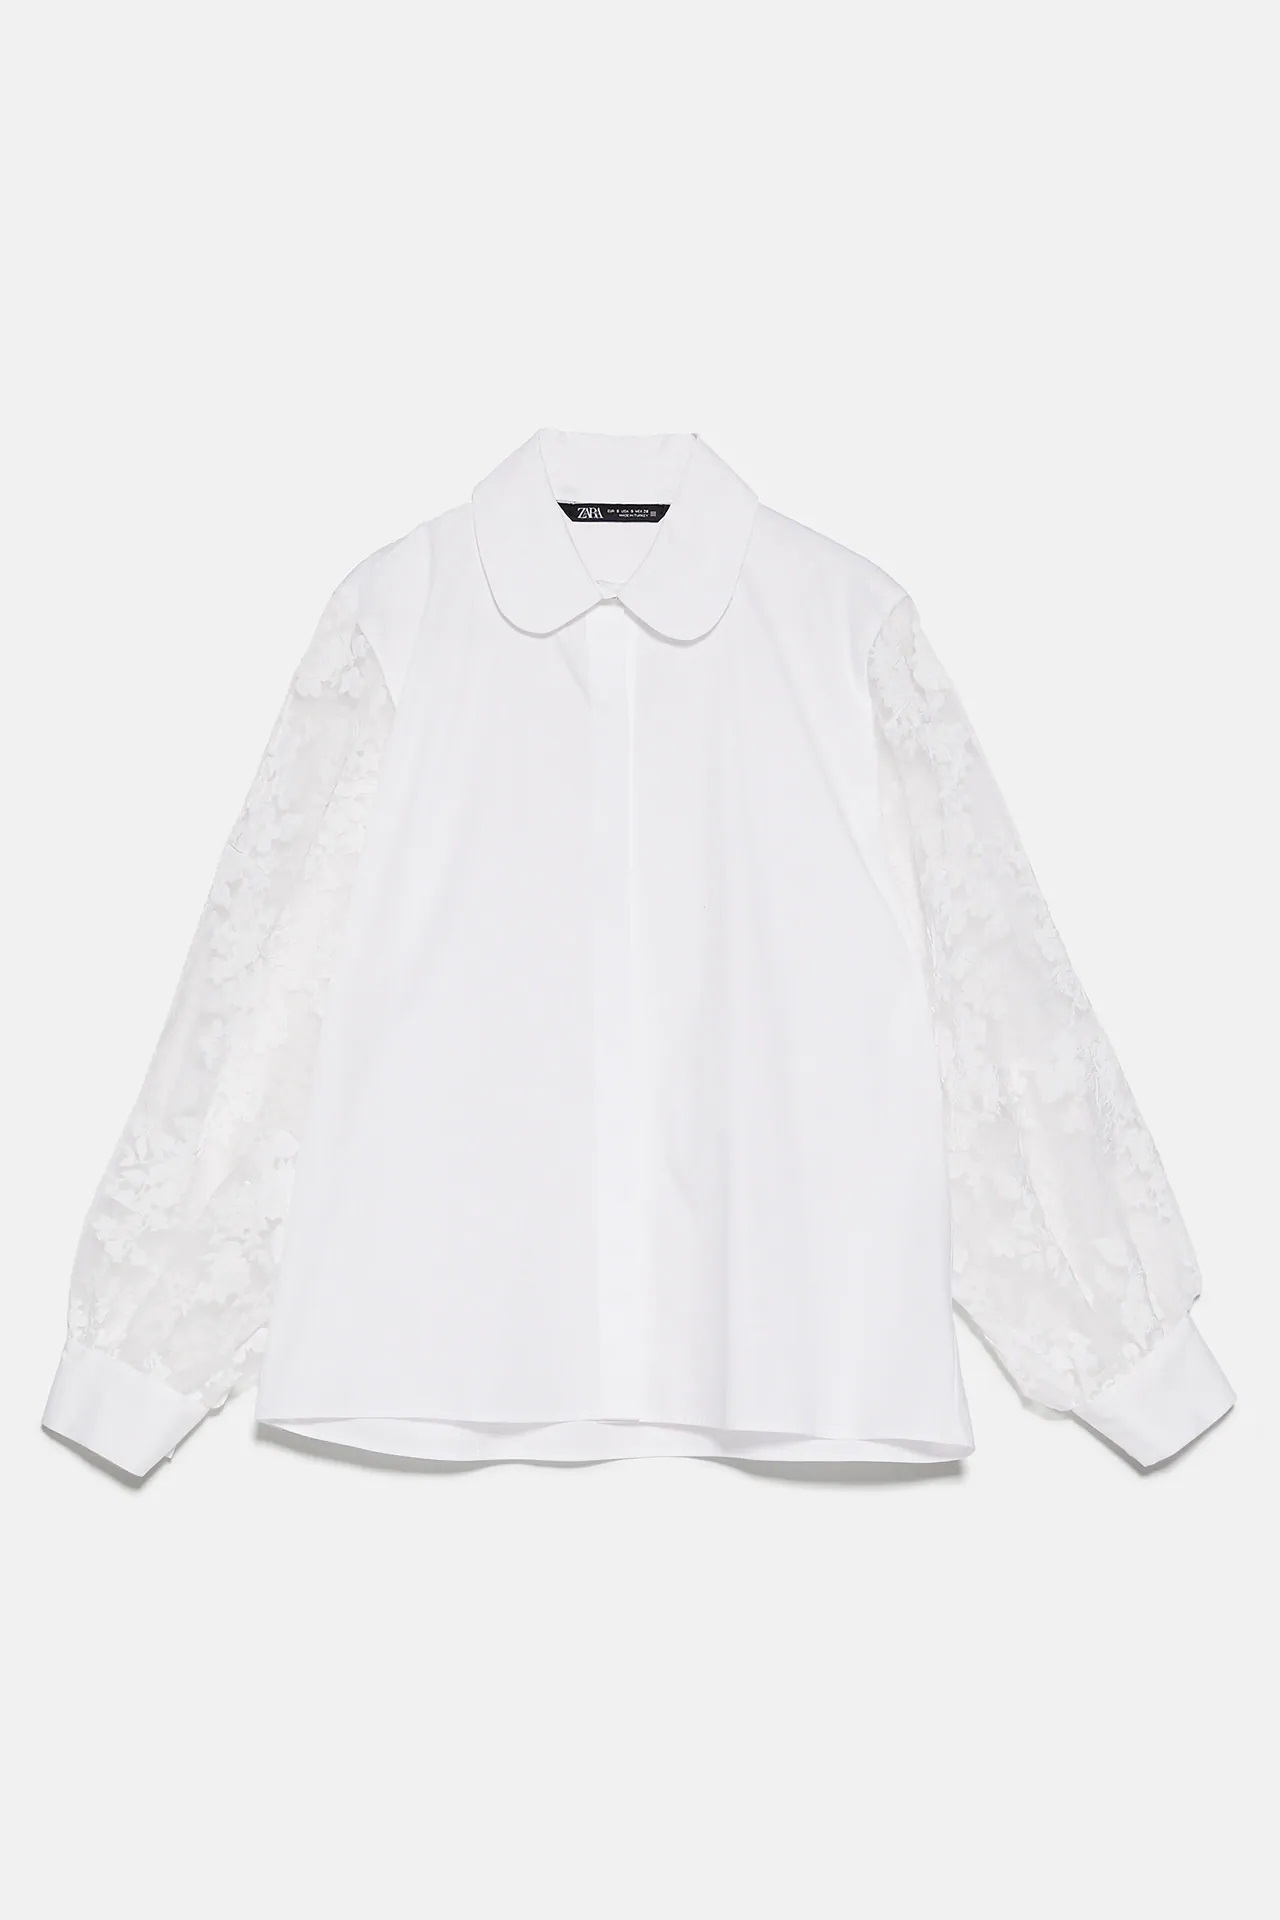 Estas son las camisas blancas de Zara que enamorarían a la princesa Grace Kelly